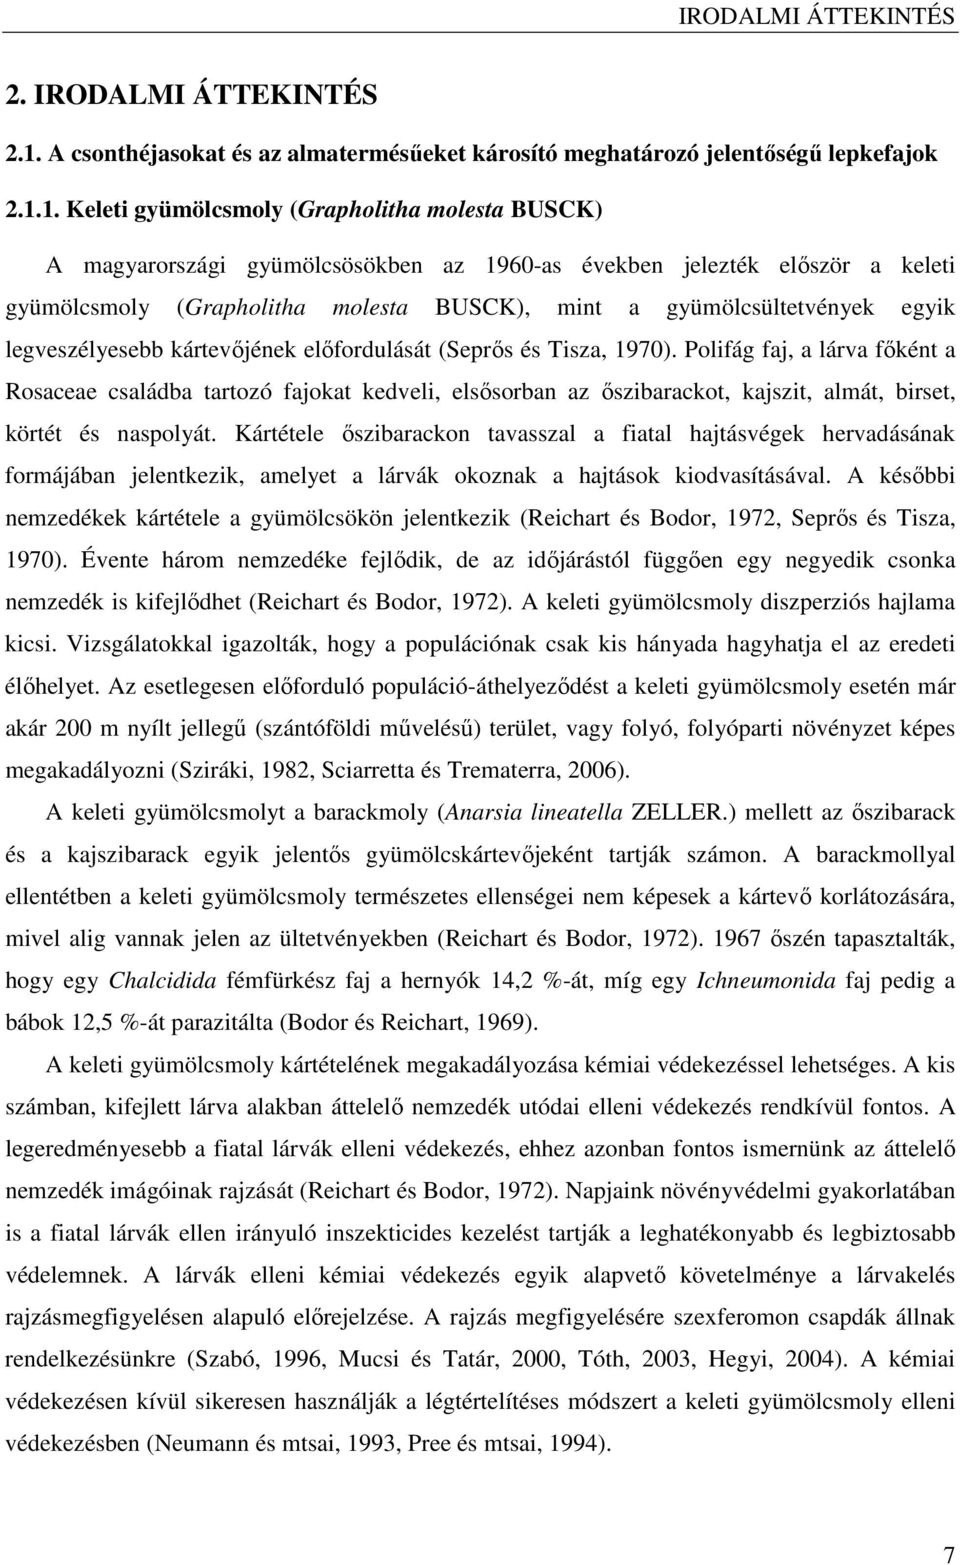 1. Keleti gyümölcsmoly (Grapholitha molesta BUSCK) A magyarországi gyümölcsösökben az 1960-as években jelezték elıször a keleti gyümölcsmoly (Grapholitha molesta BUSCK), mint a gyümölcsültetvények